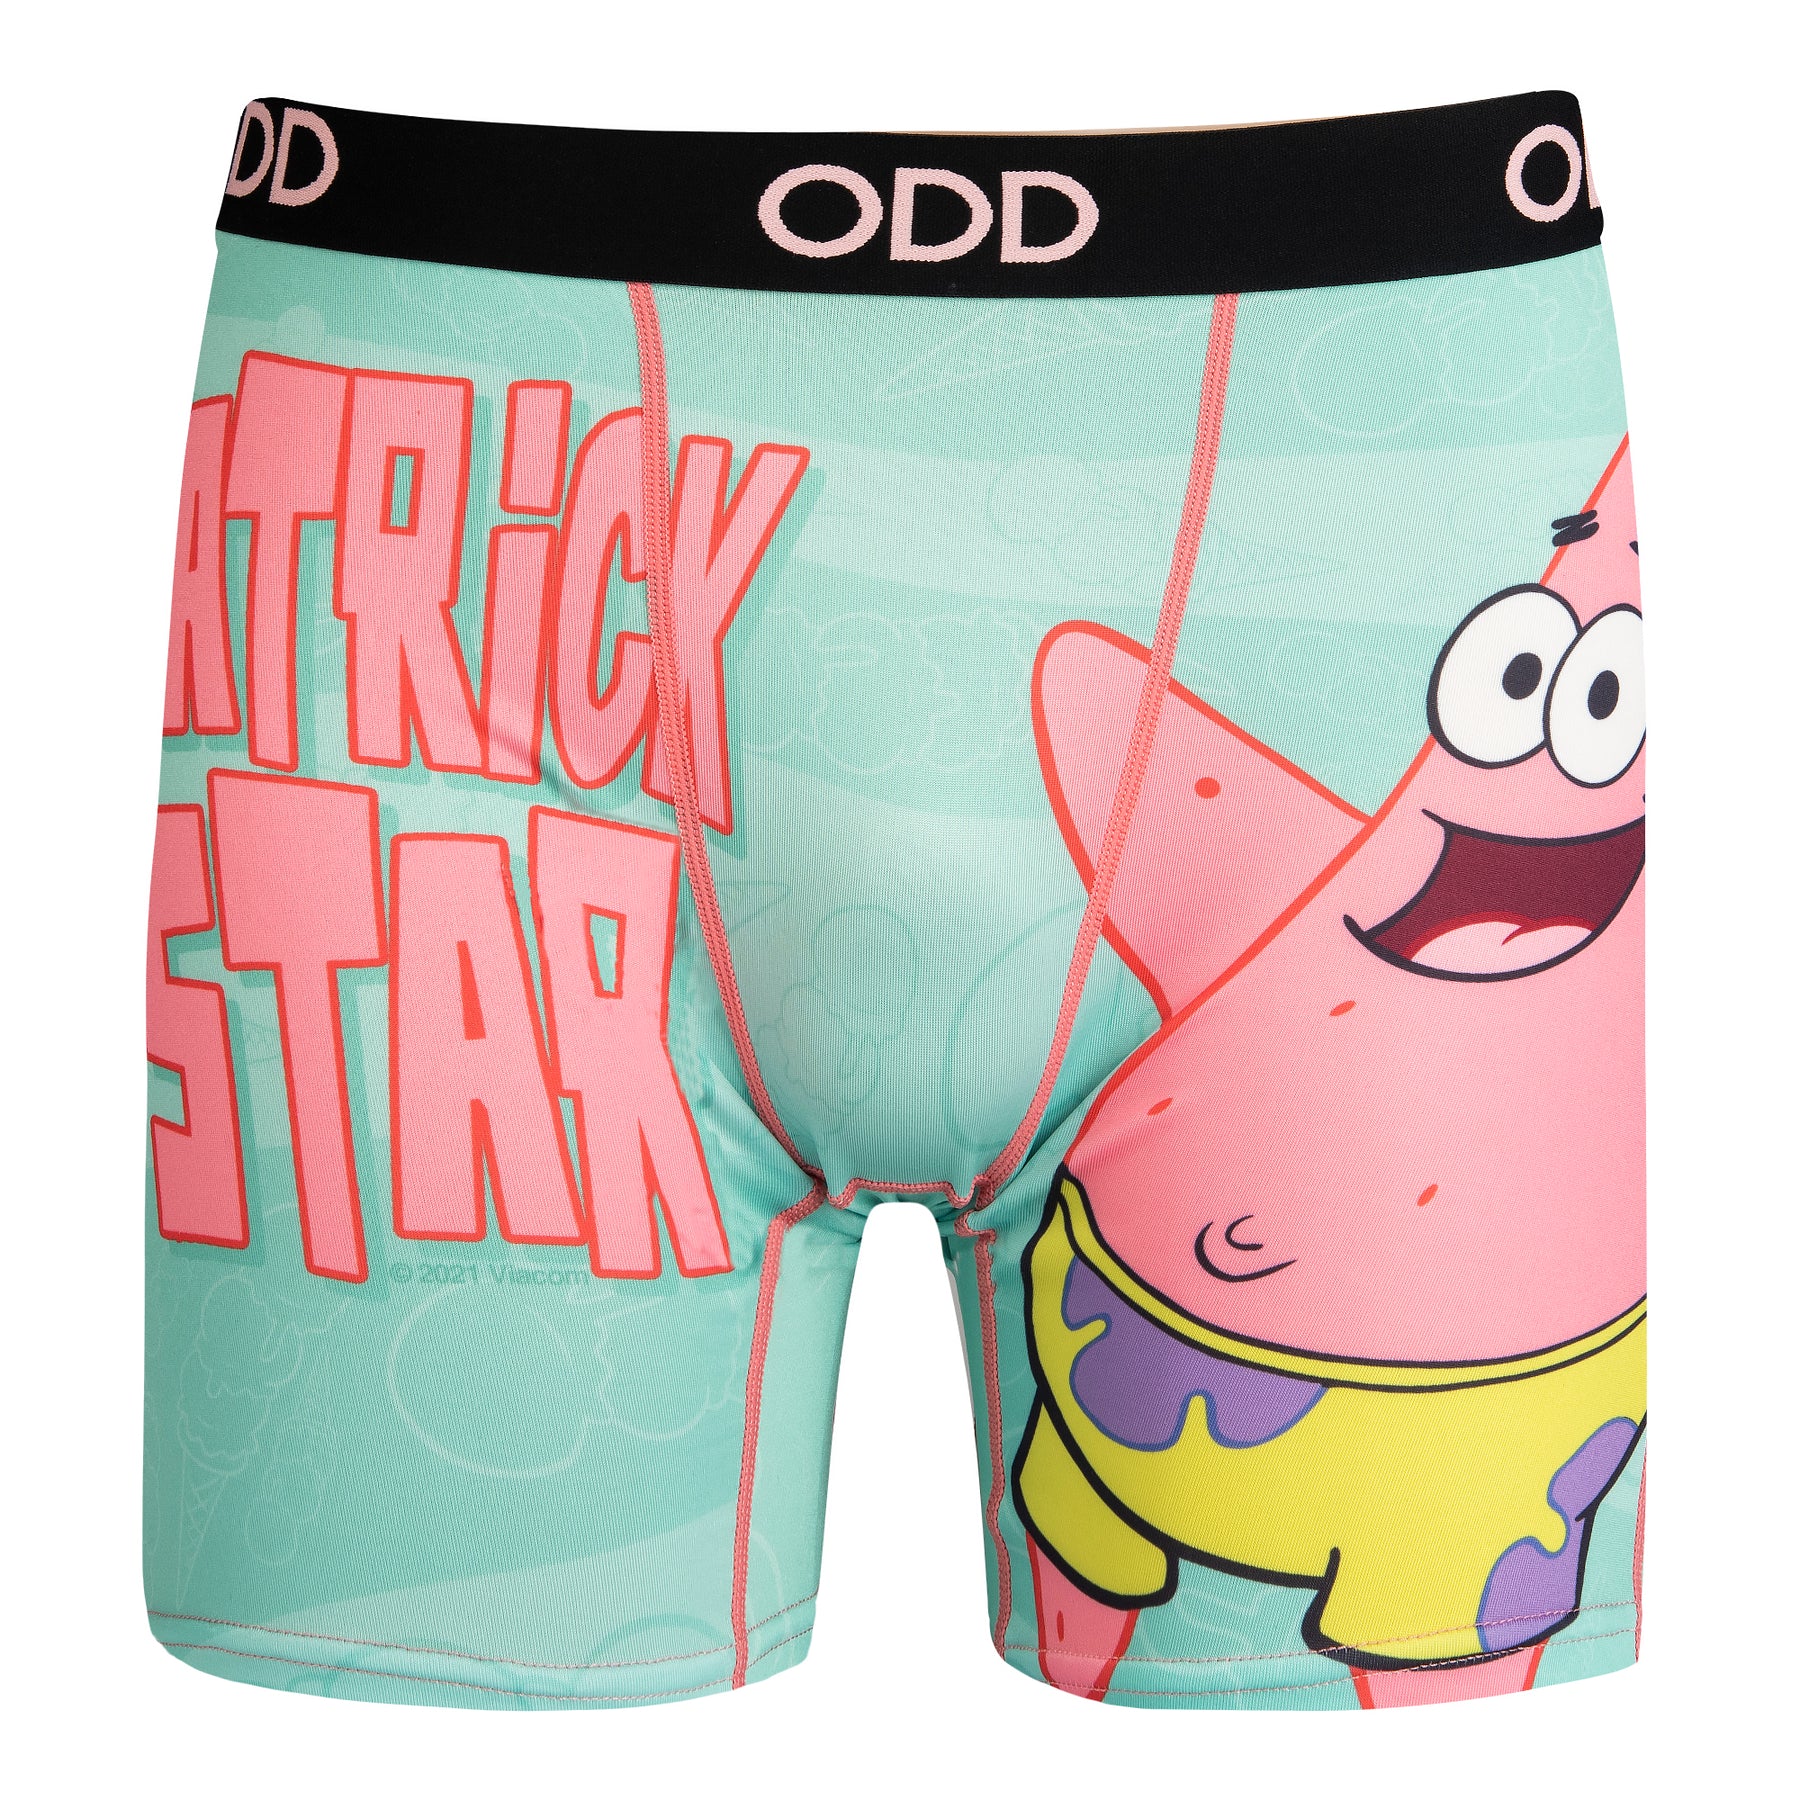 Odd Sox, Nickelodeon Patrick Star Men's Boxer Brief Underwear